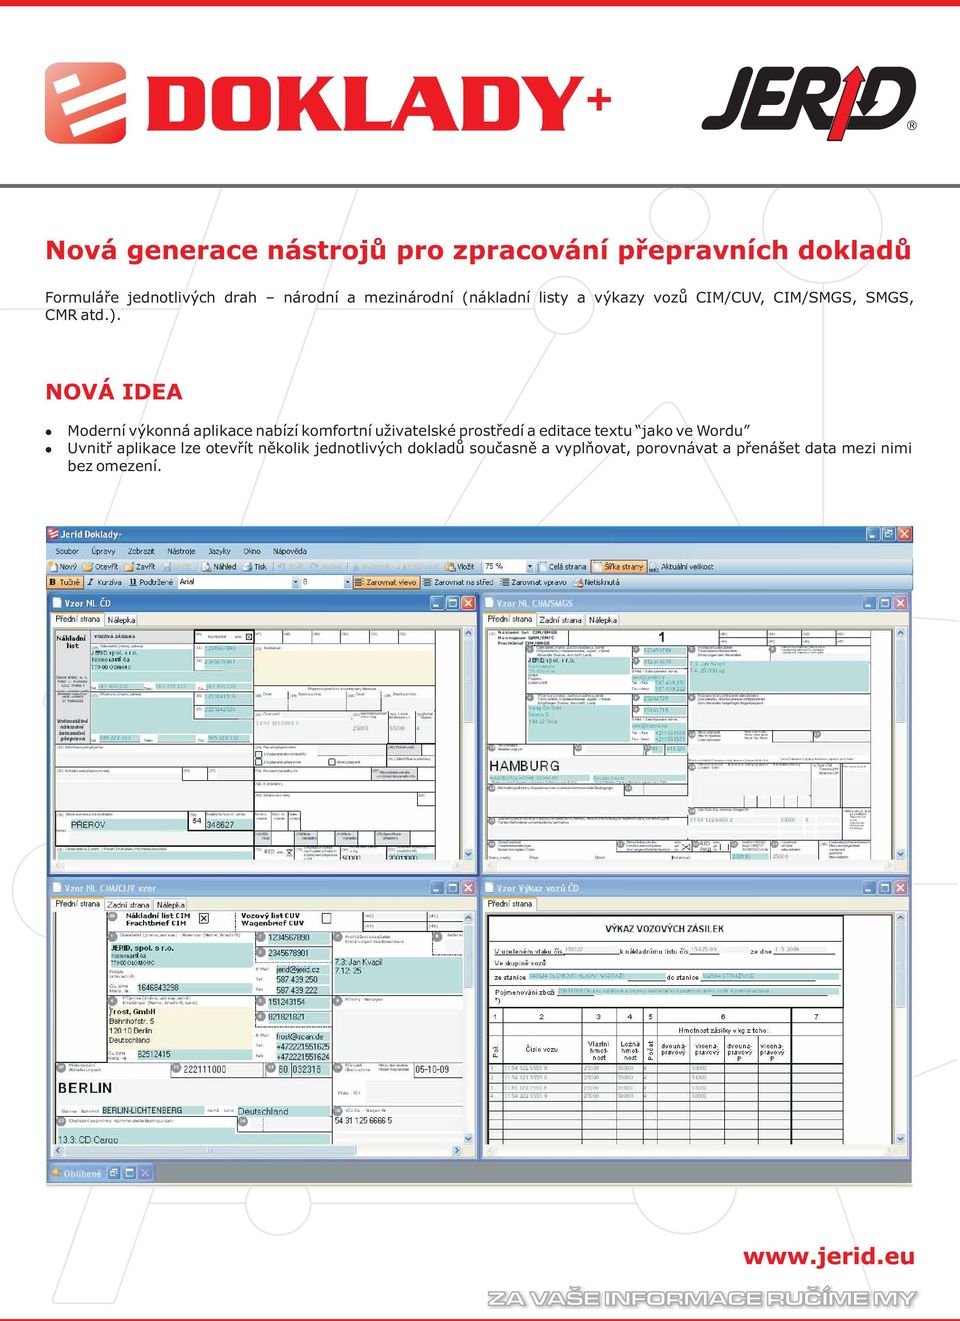 NOVÁ IDEA Moderní výkonná aplikace nabízí komfortní uživatelské prostředí a editace textu jako ve